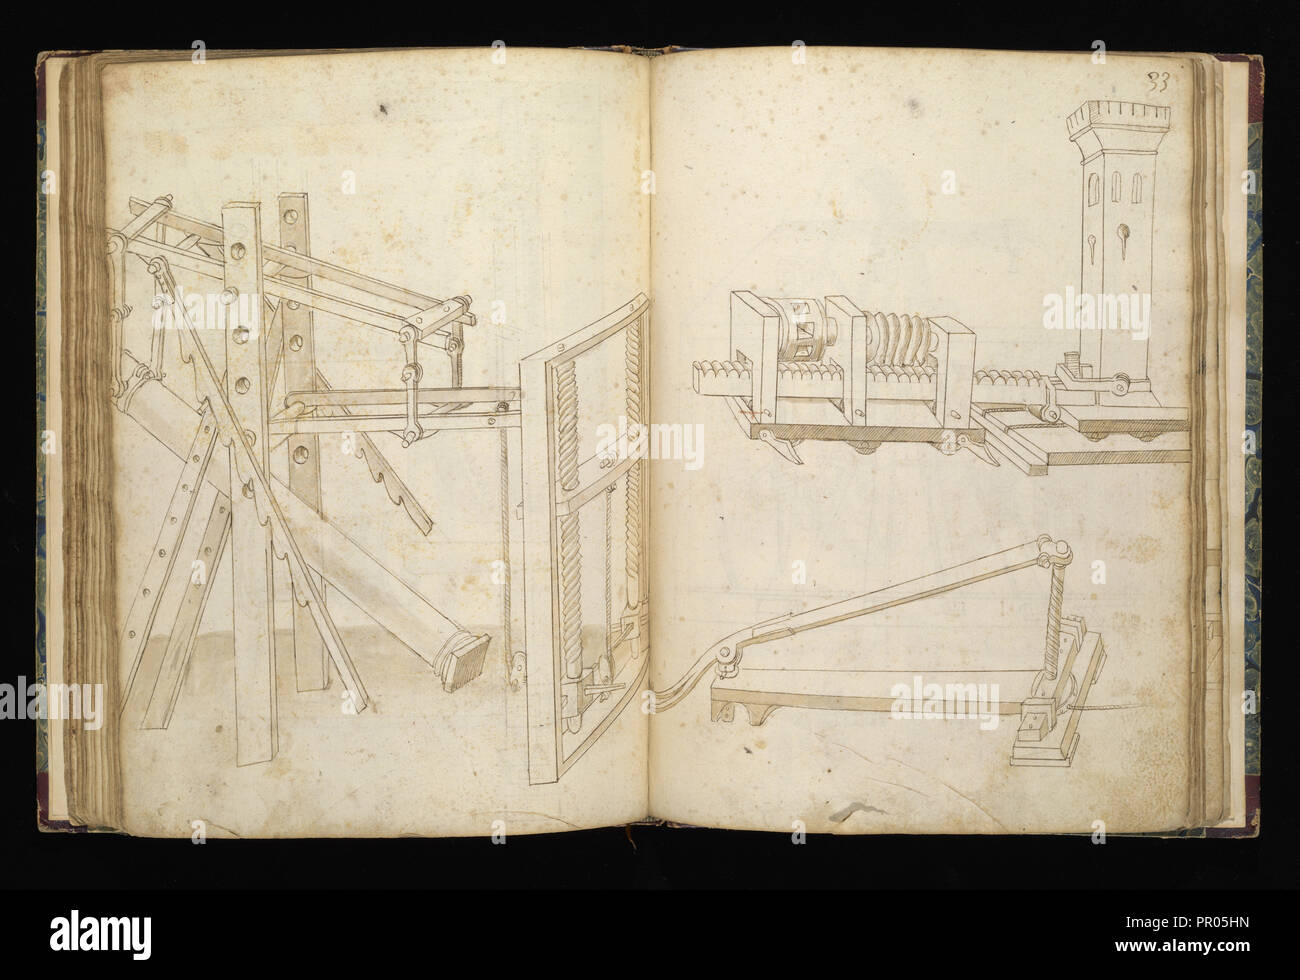 Edificij et machine, Martini, Francesco di Giorgio, 1439-1501, brown ink and wash, ca. 1475-ca. 1480 Stock Photo